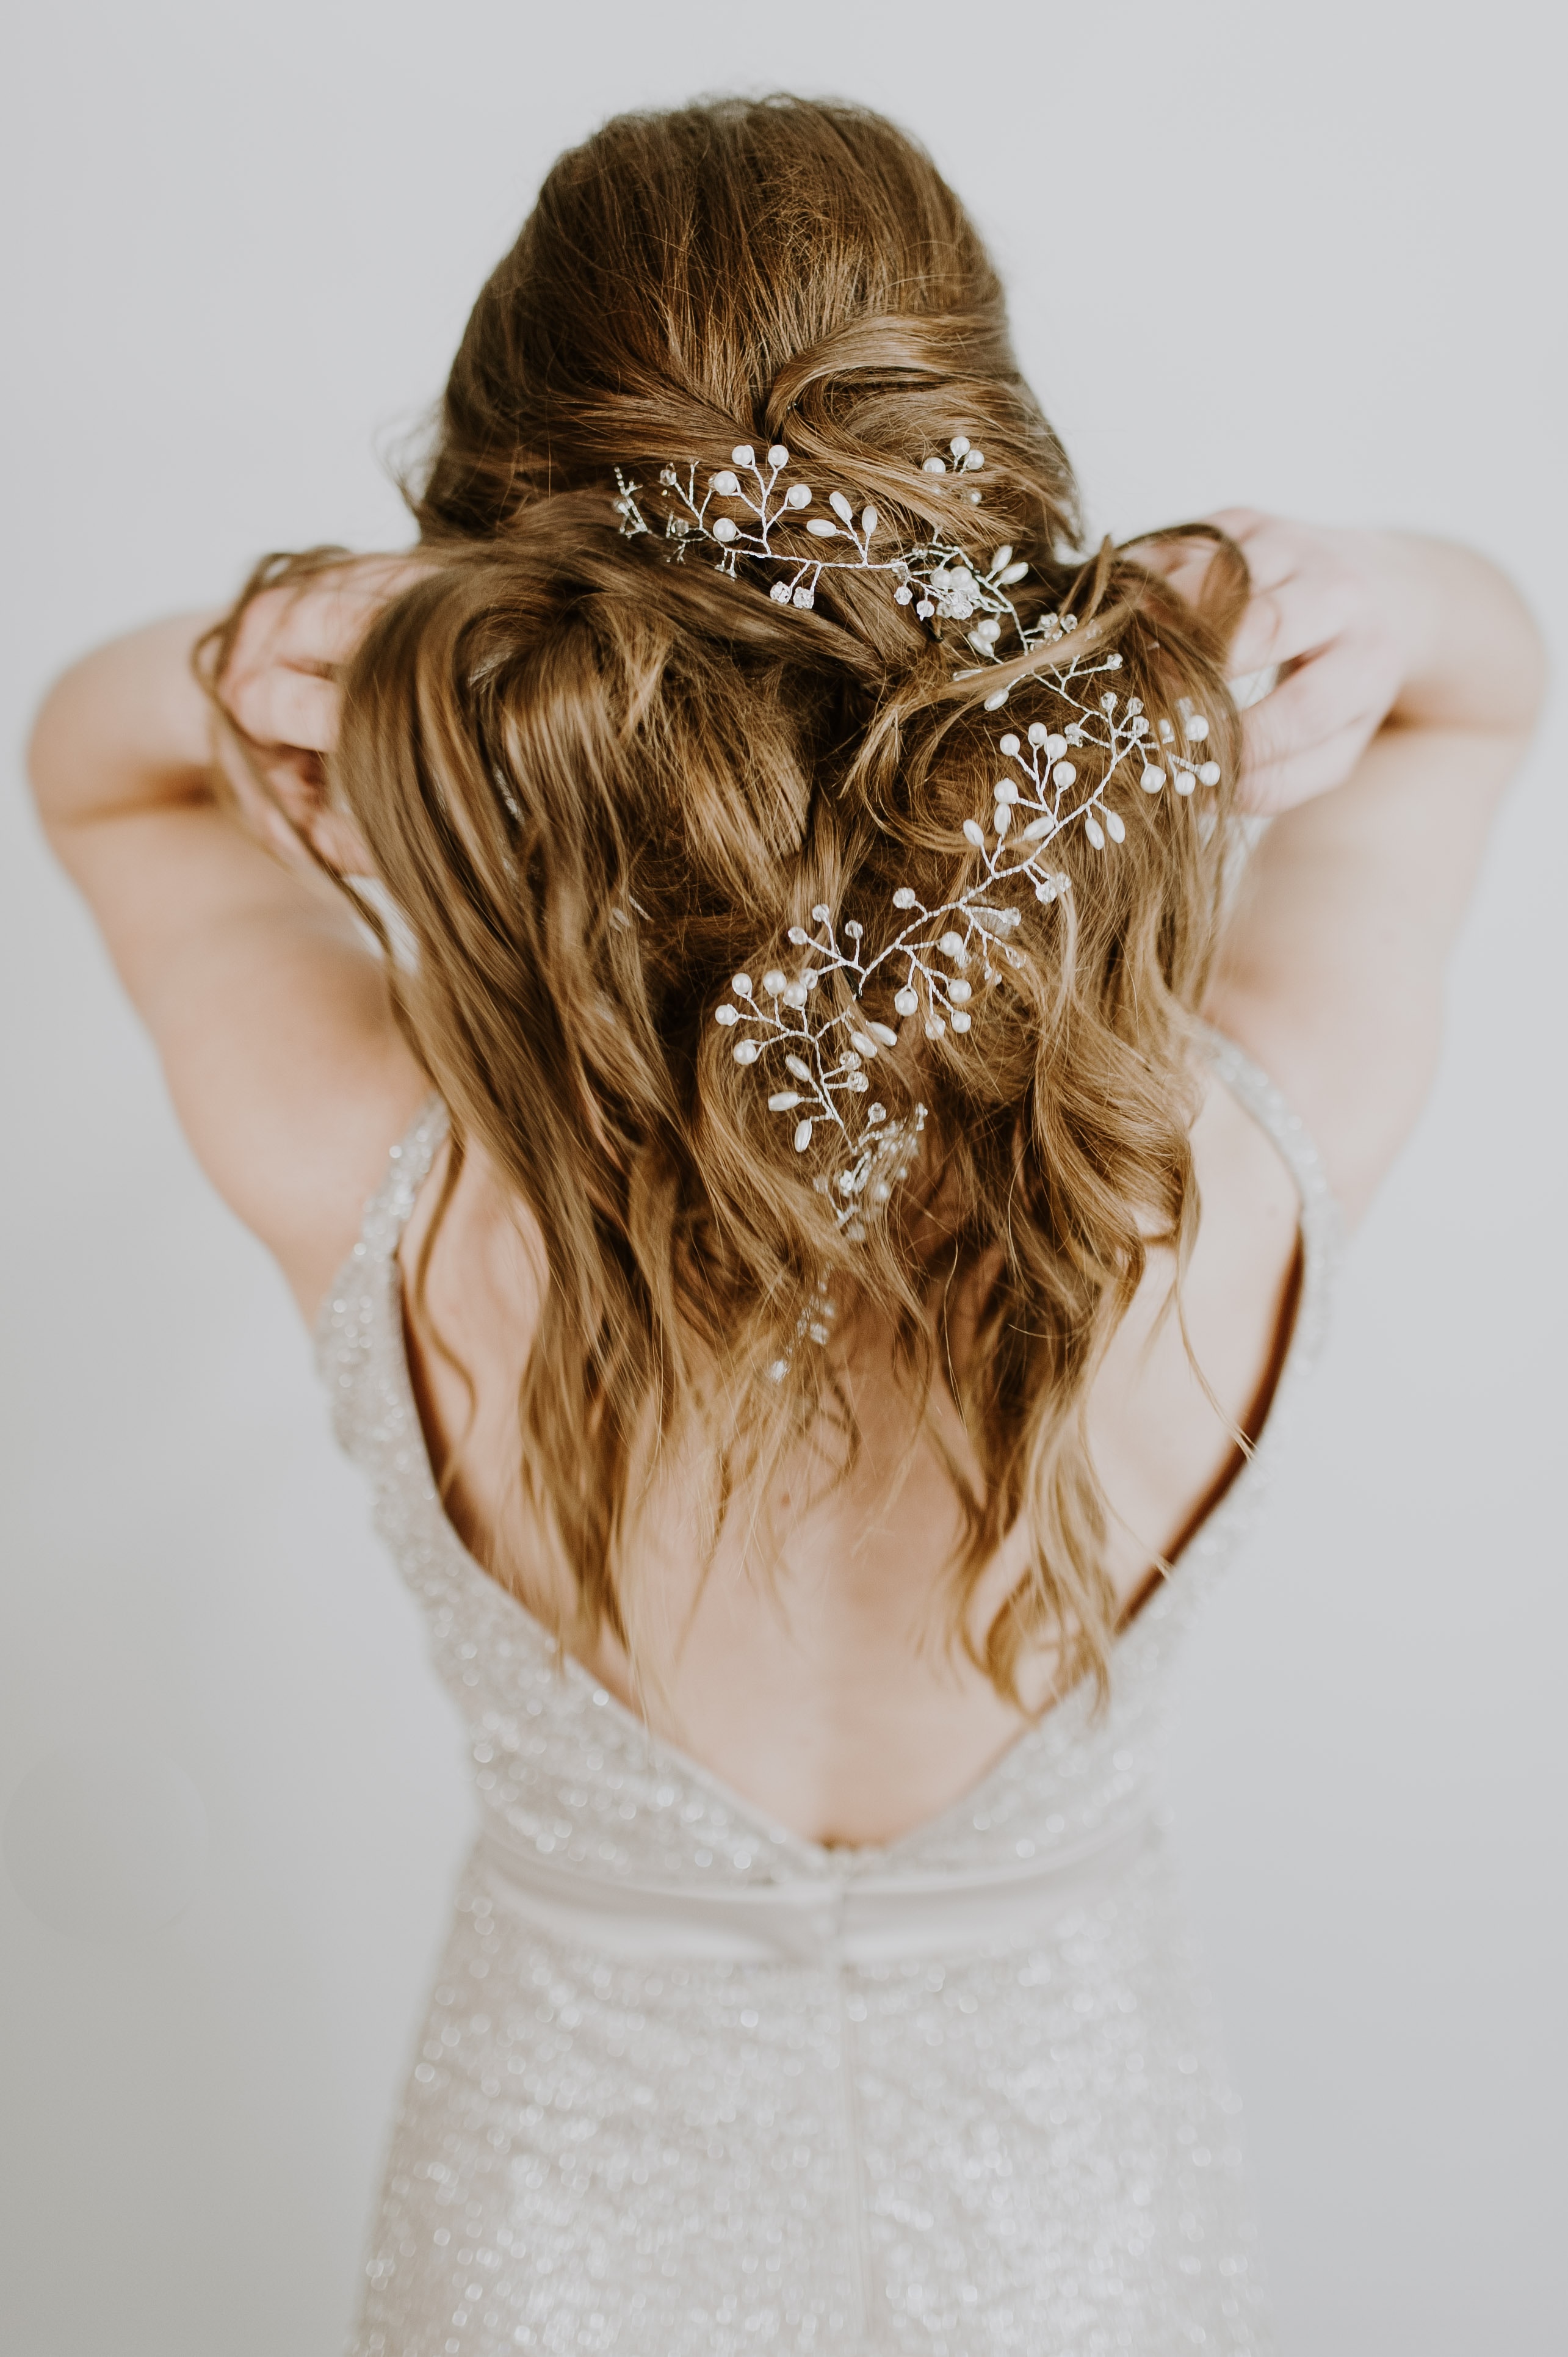 Die Rückseite des Haars einer Frau mit einem Blumenkopfschmuck.